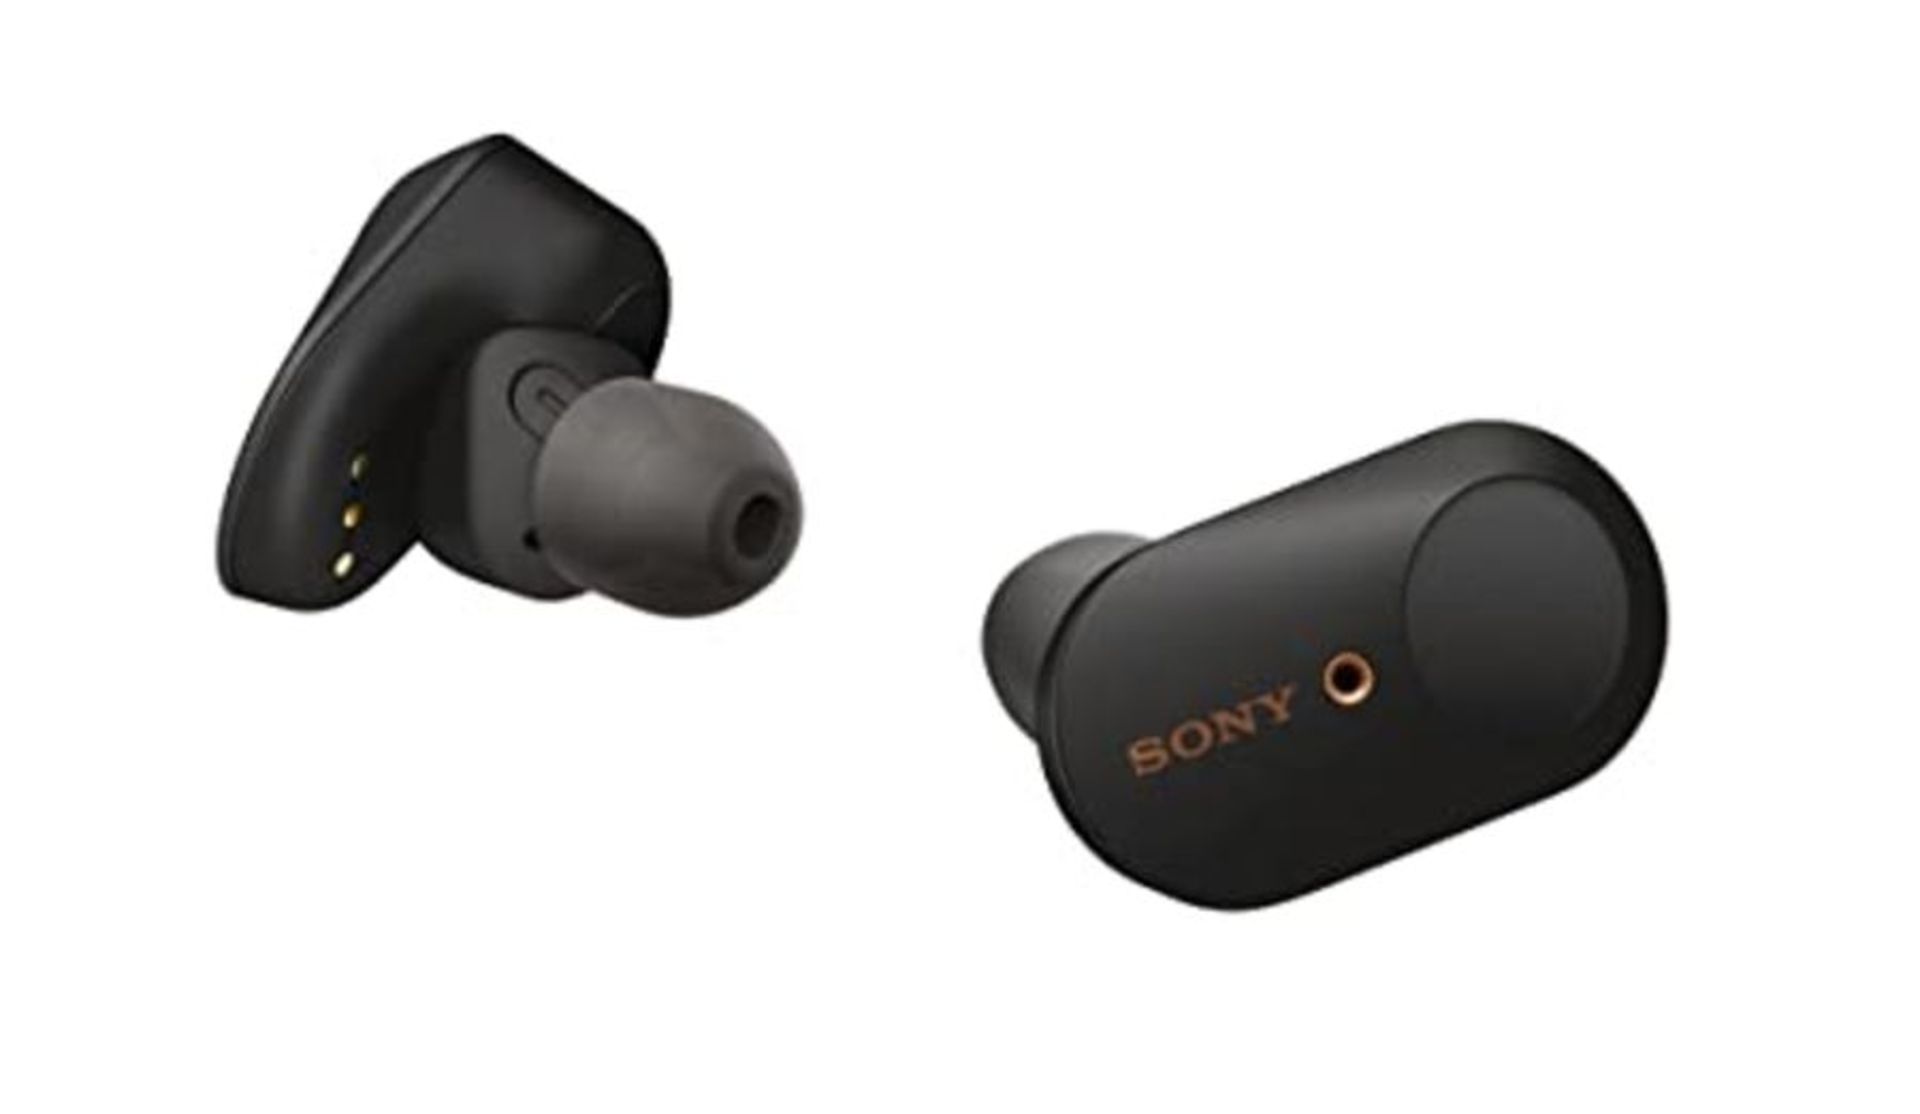 RRP £170.00 Sony WF-1000XM3 vollkommen kabellose Bluetooth KopfhÃ¶rer / Earbuds mit aktiver Ger?